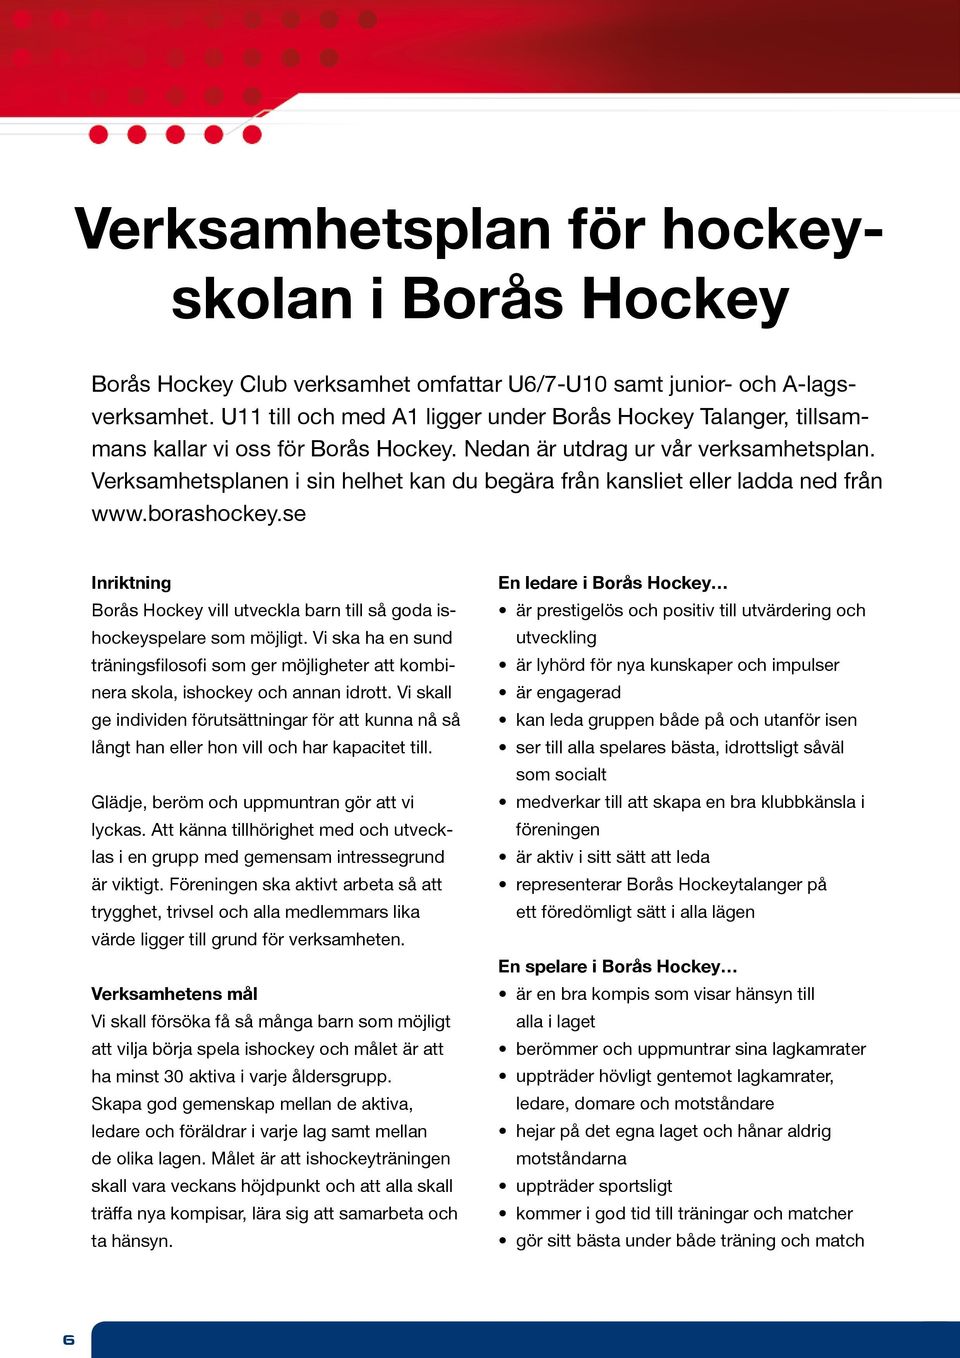 Verksamhetsplanen i sin helhet kan du begära från kansliet eller ladda ned från www.borashockey.se Inriktning Borås Hockey vill utveckla barn till så goda ishockeyspelare som möjligt.